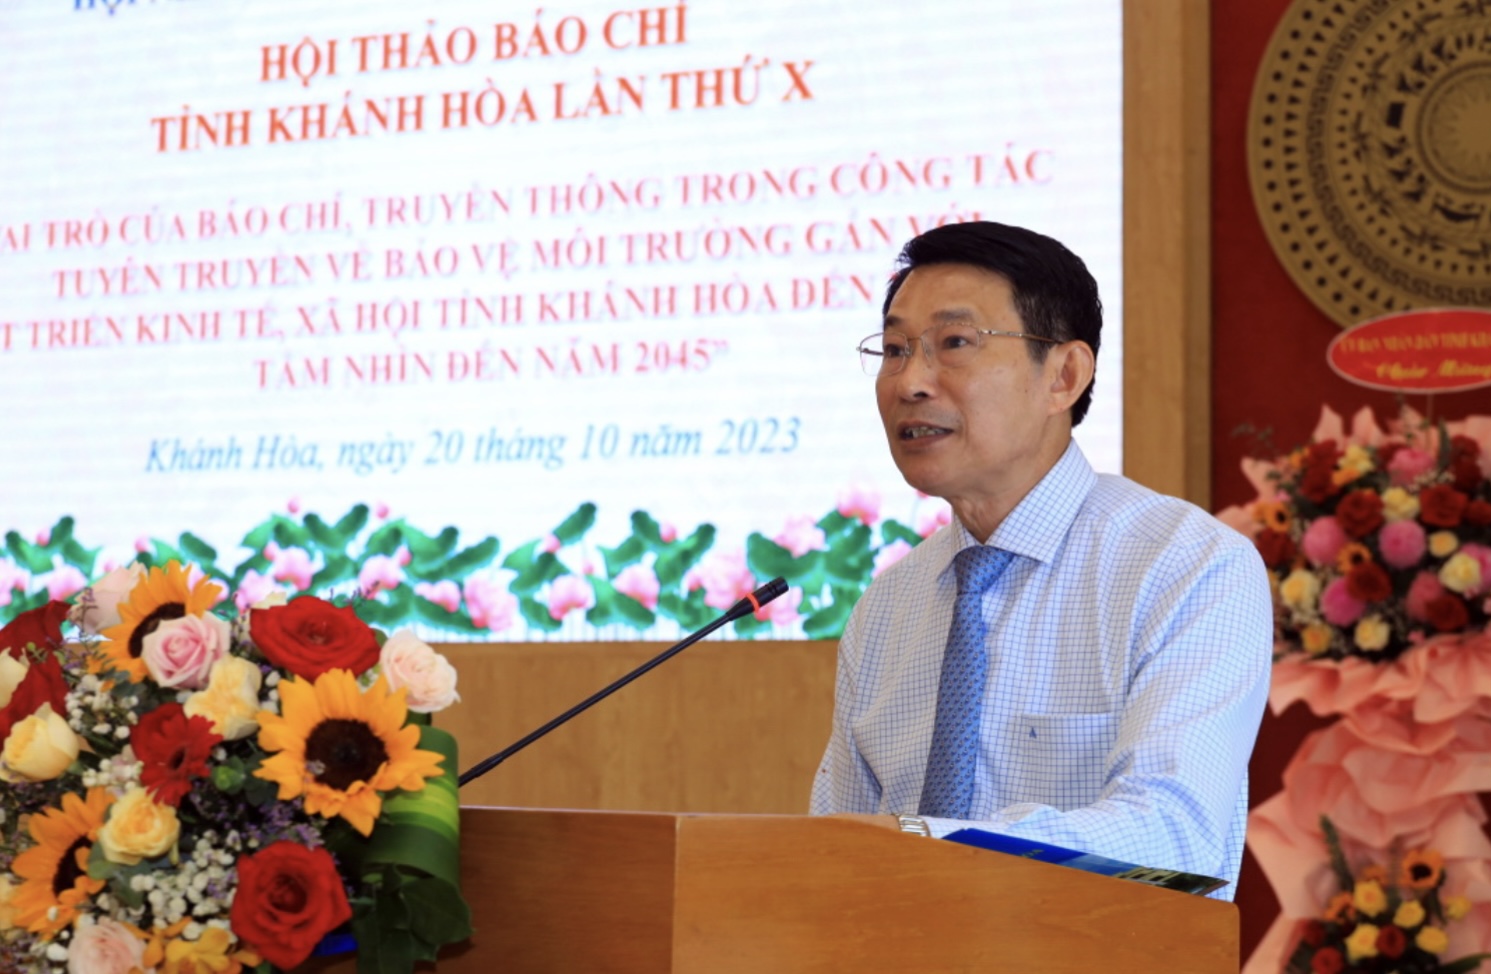 Ông Đinh Văn Thiệu - Phó Chủ tịch UBND tỉnh Khánh Hòa phát biểu tại Hội thảo